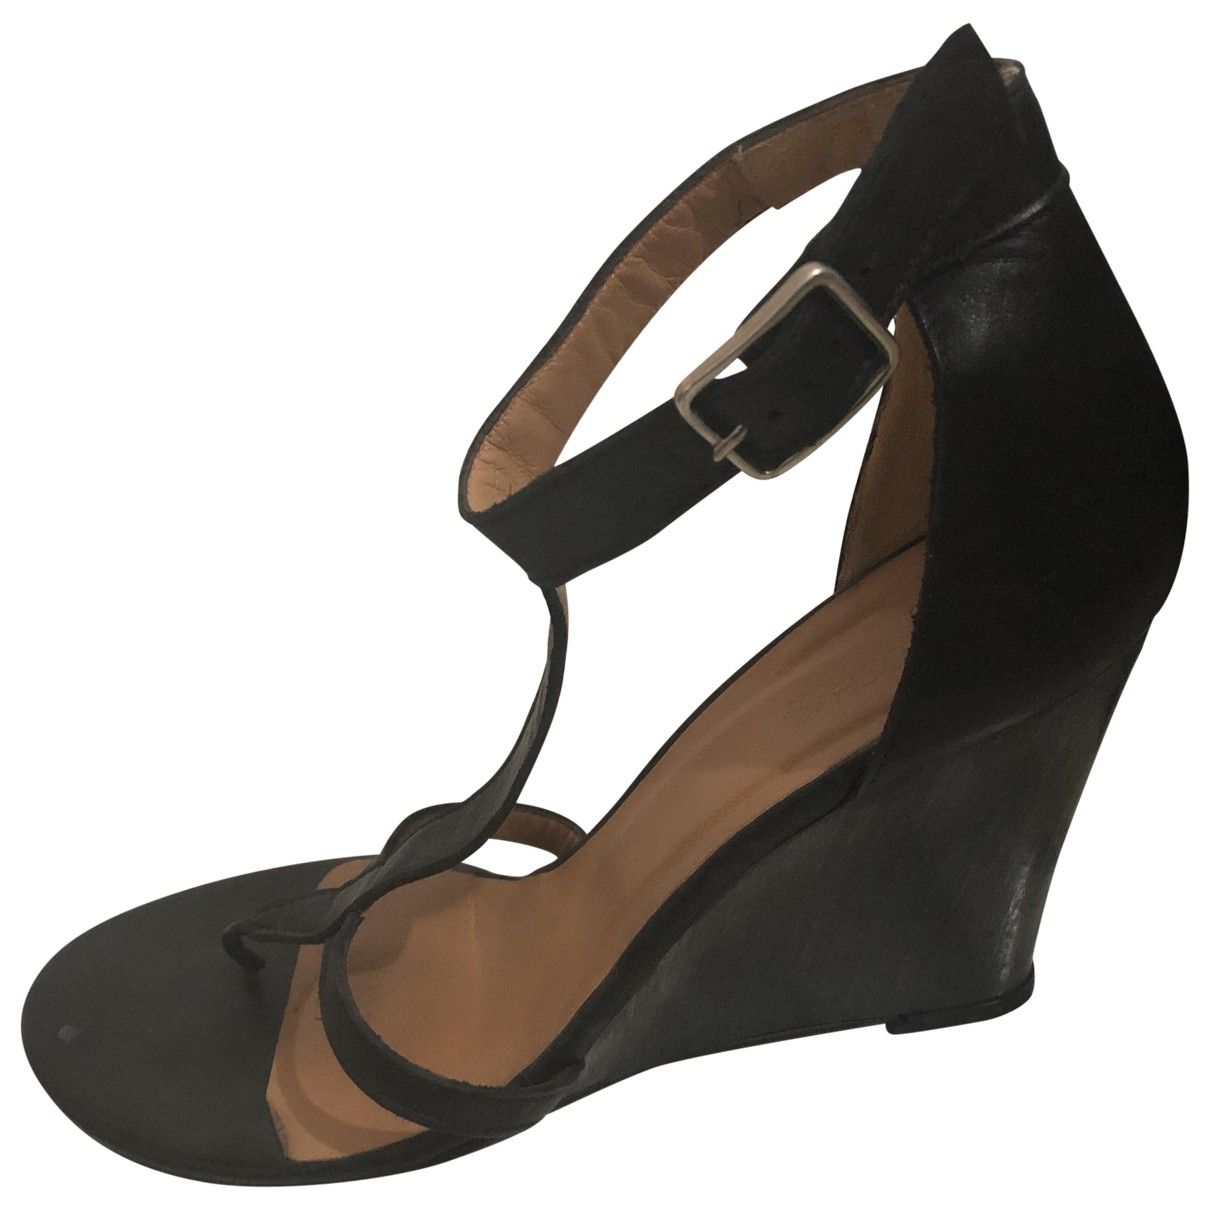 Leather heels Tatoosh